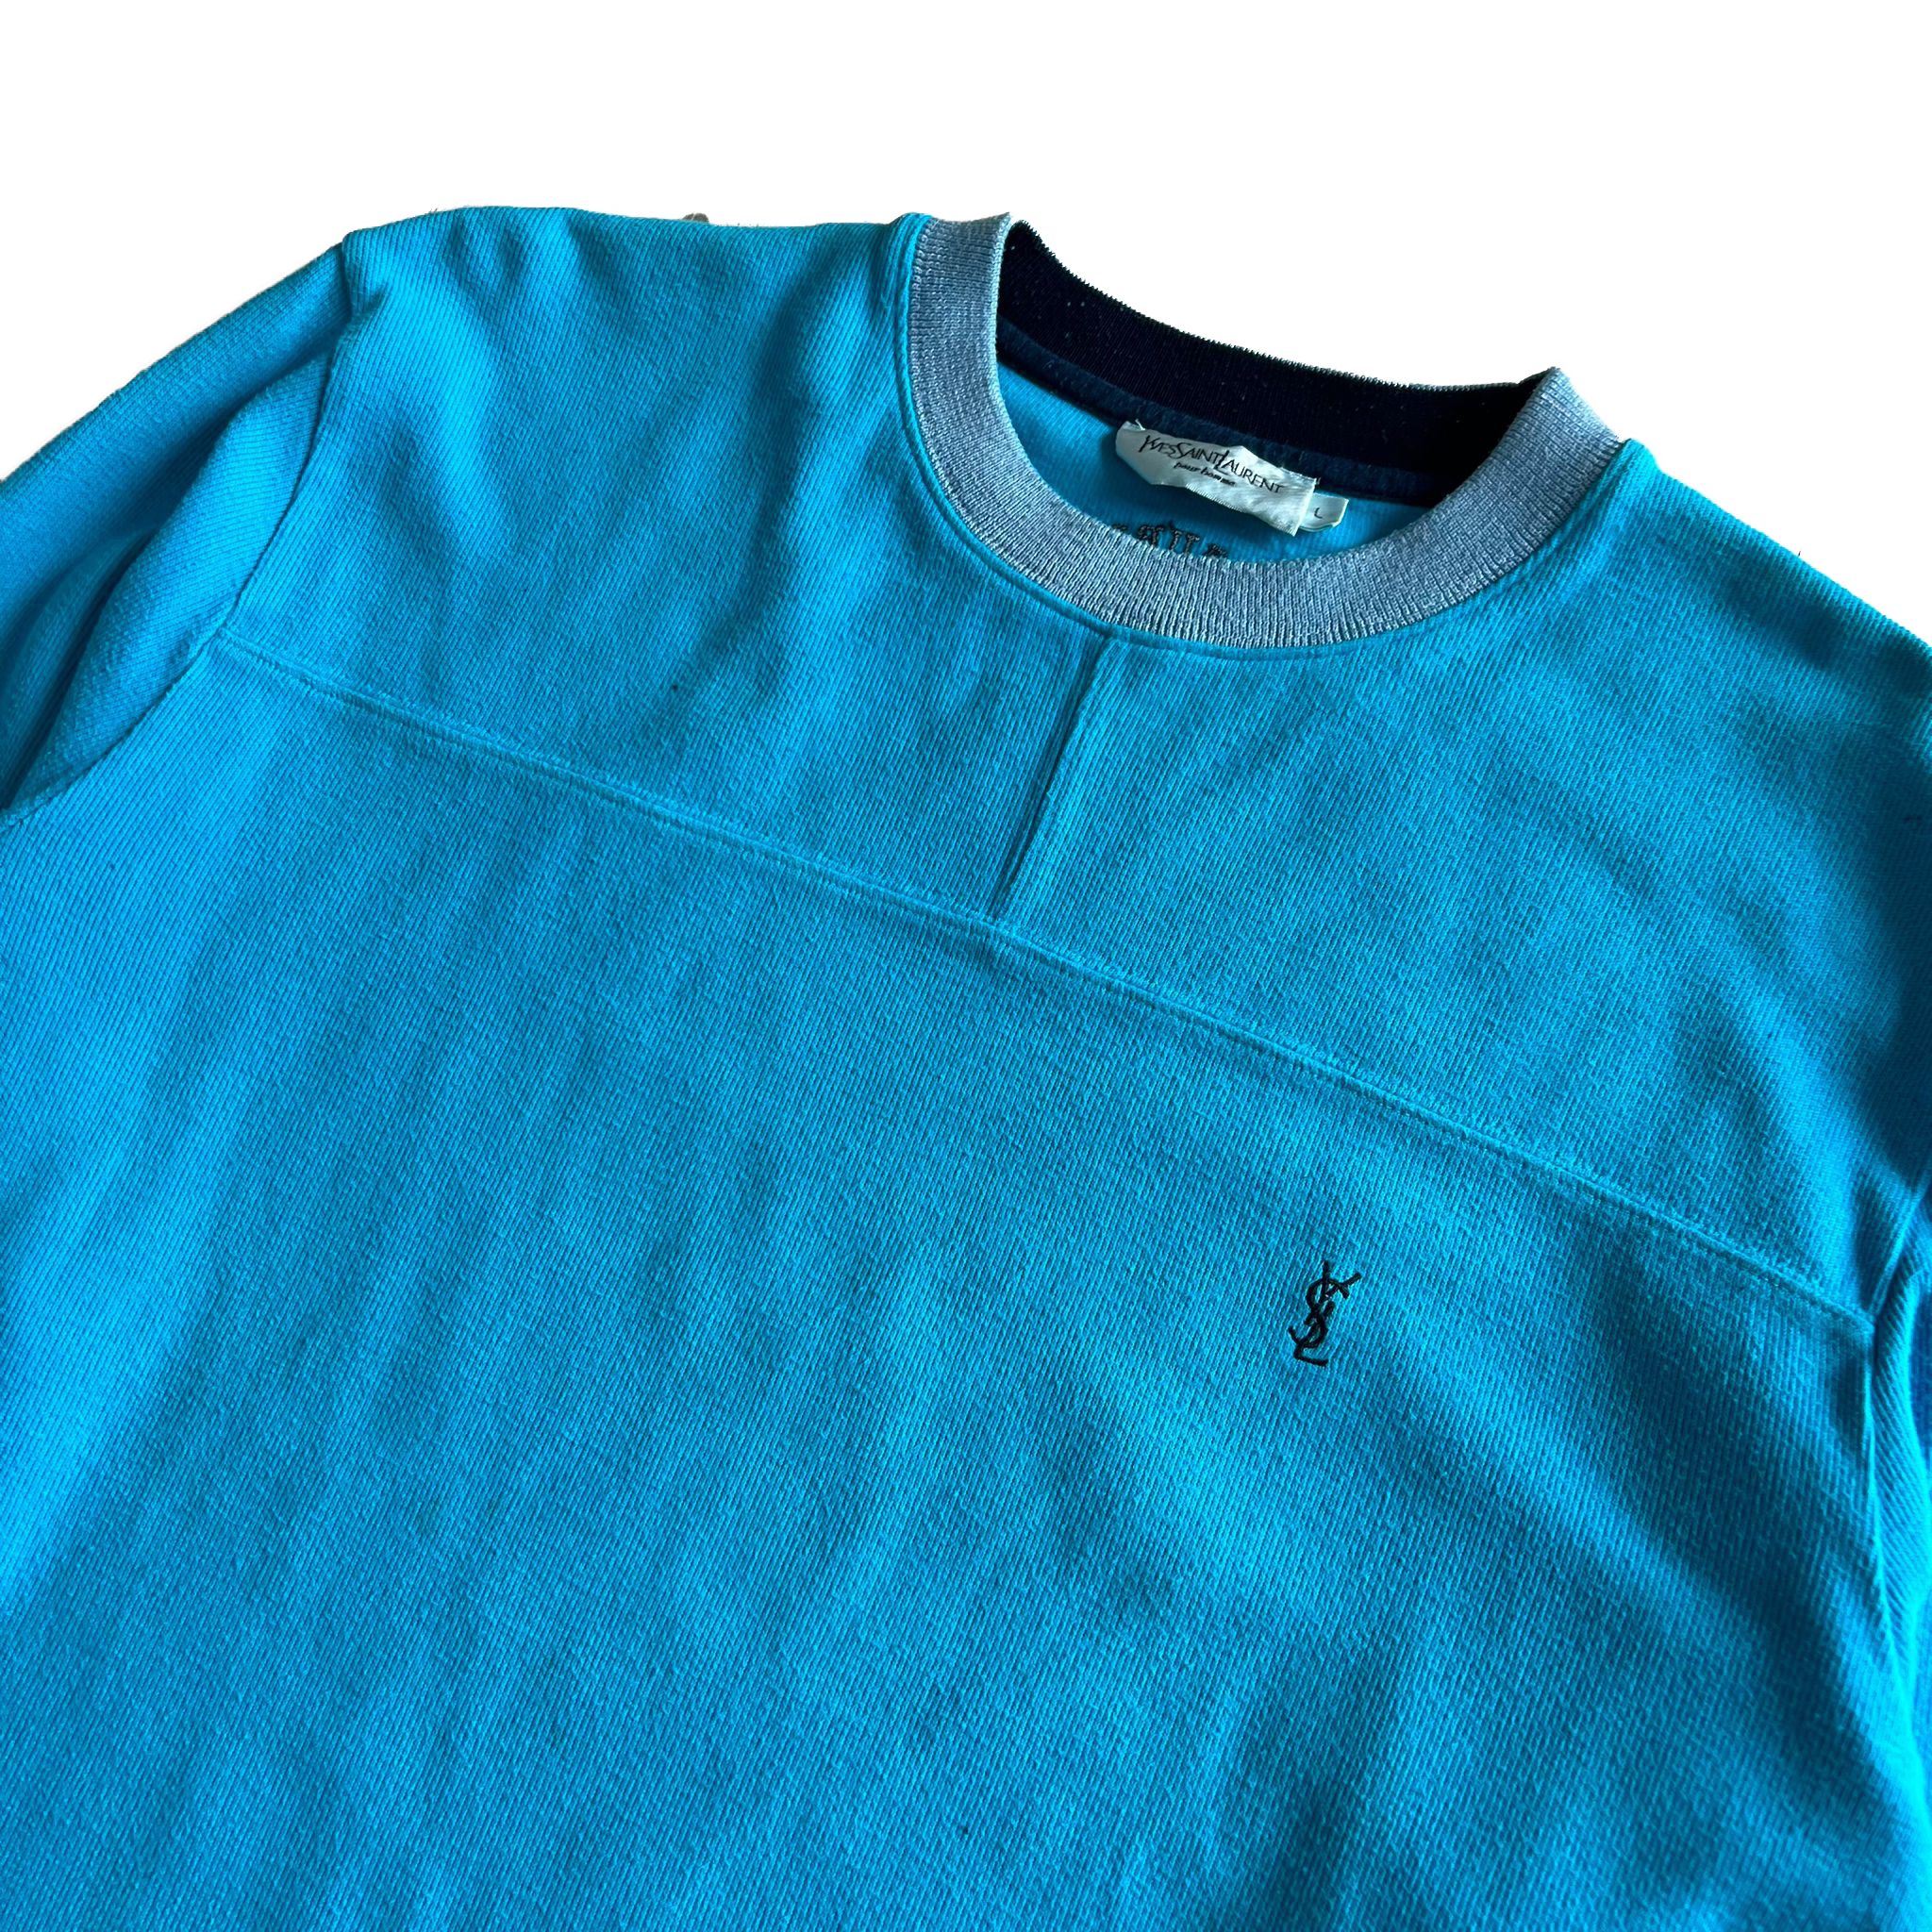 90's YSL sweatshirt